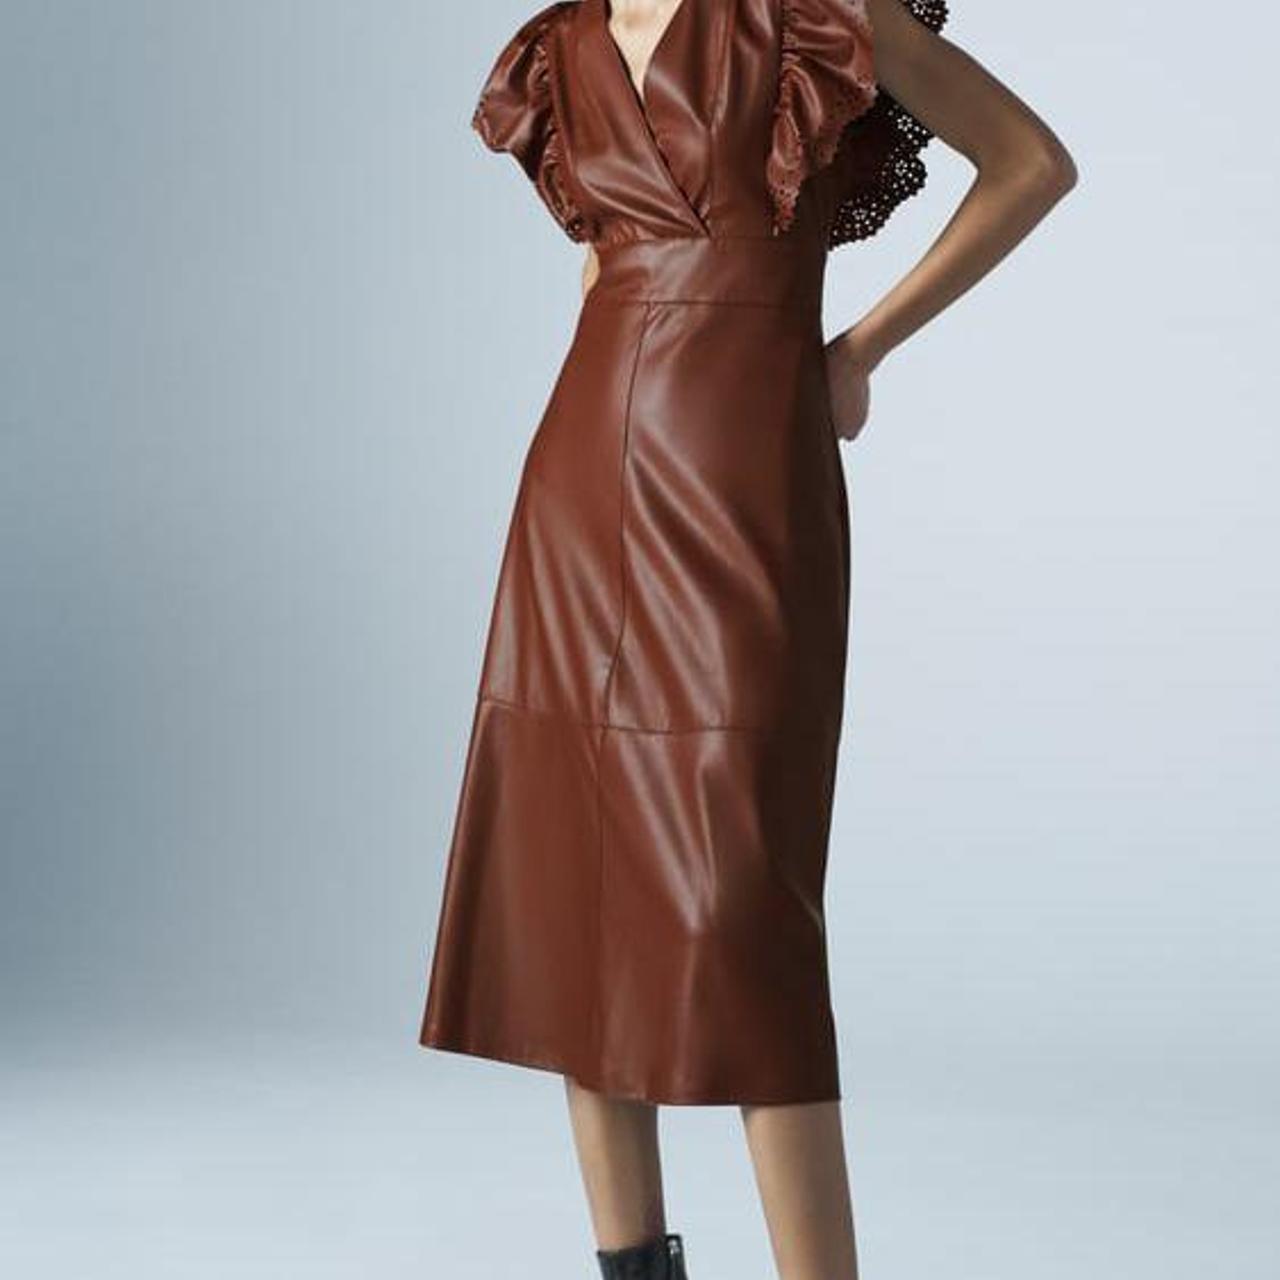 Zara brown faux leather midi dress